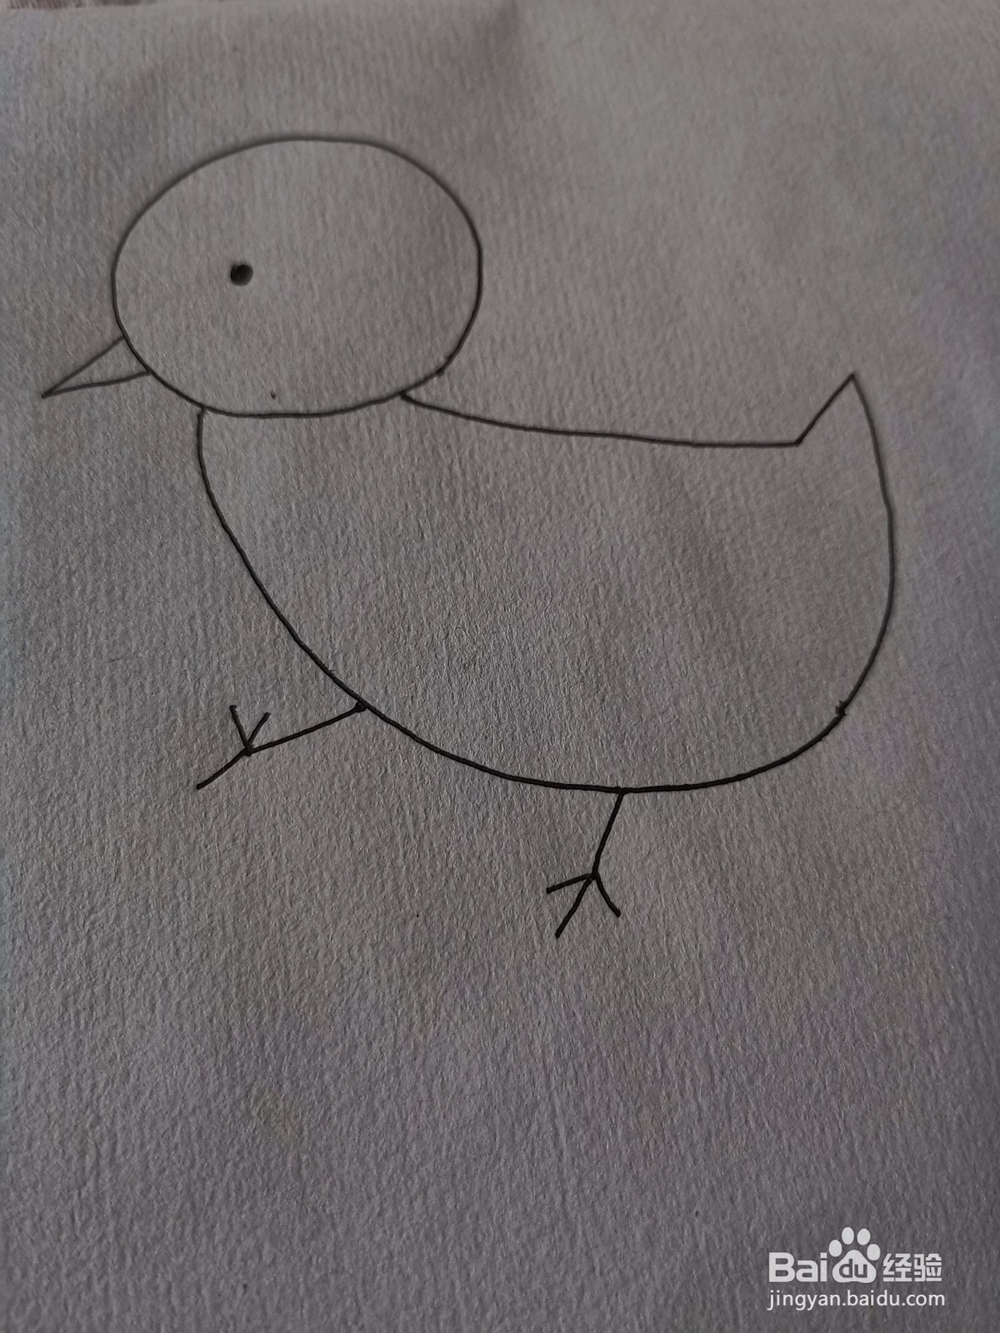 如何画小鸡简笔画